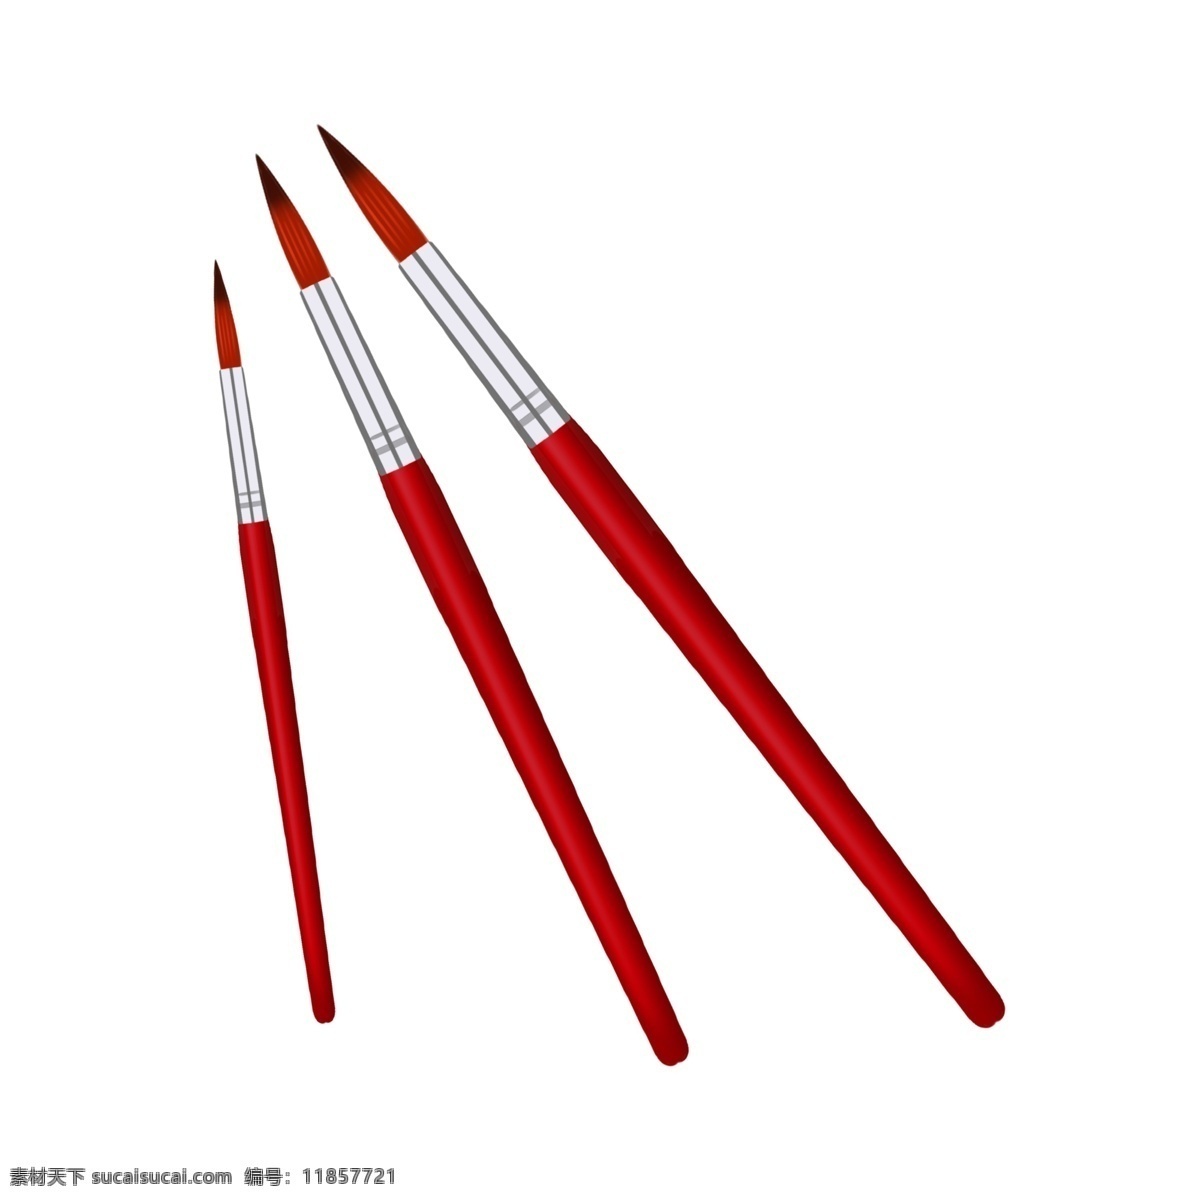 三 支 红色 笔 插画 红色的笔 三支笔 学习用品 创意文具 学习教育 漂亮的笔插画 卡通笔装饰 办公用品